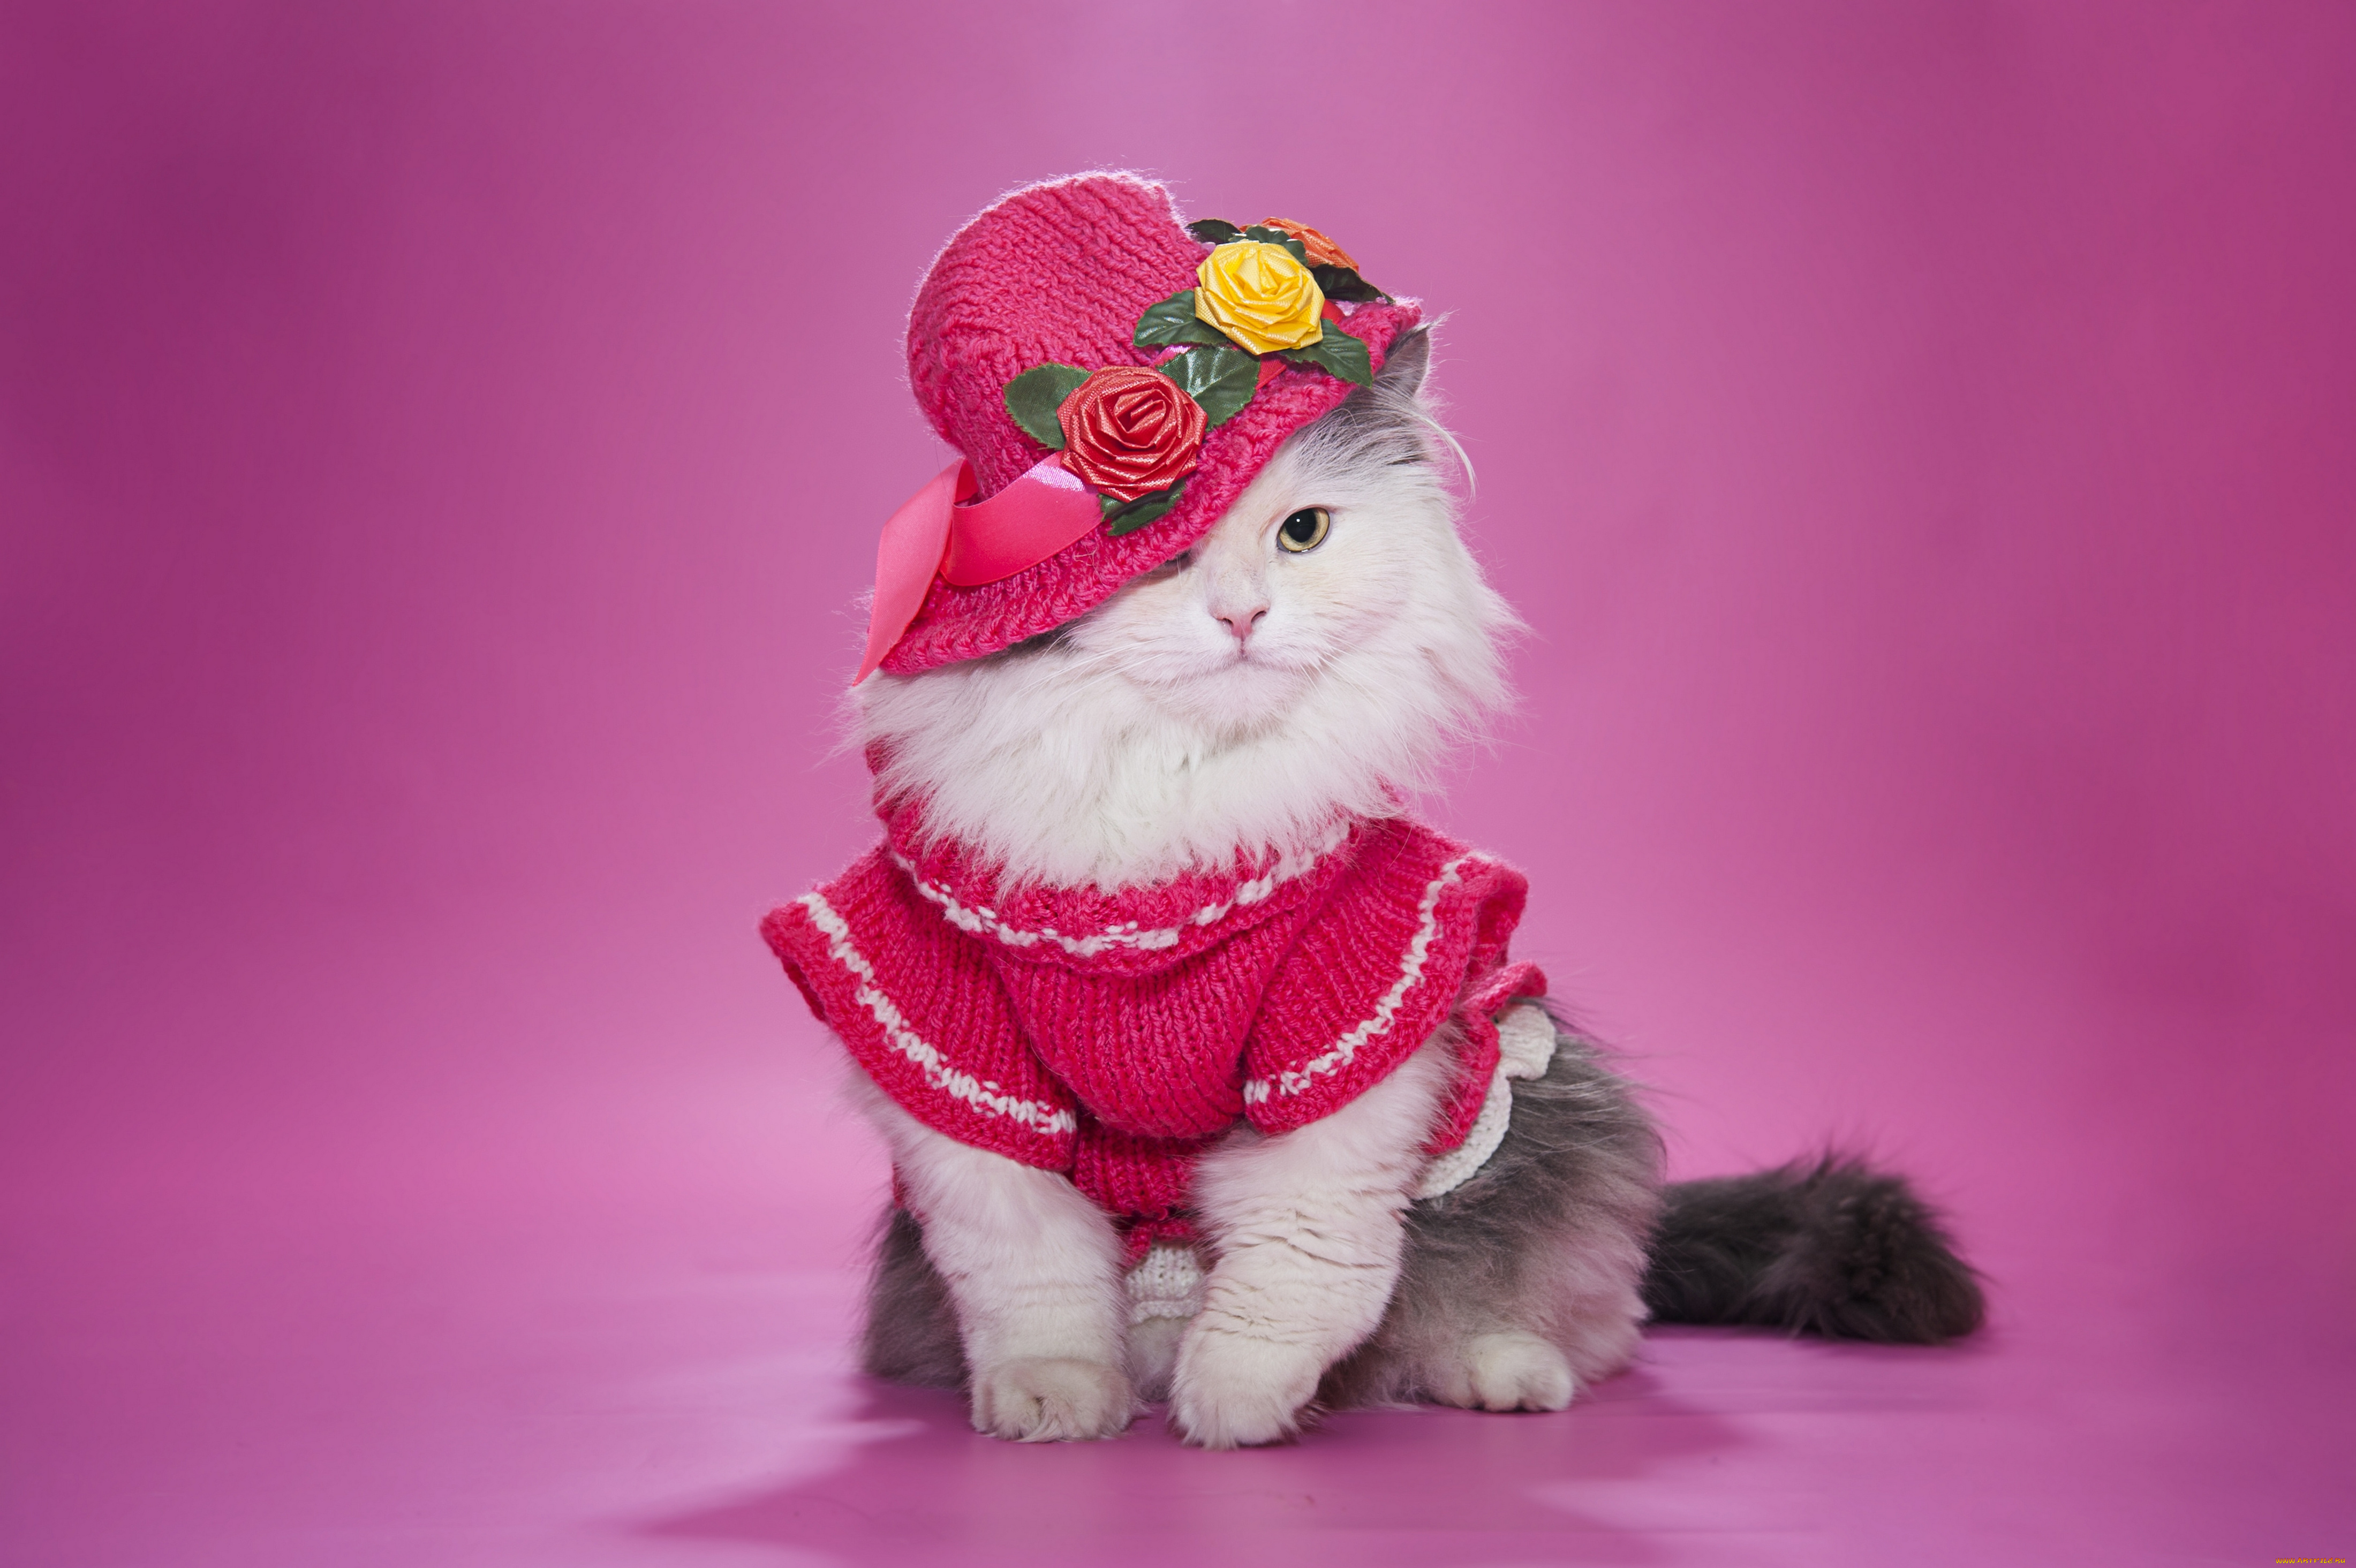 Prekrasnoe dalyoko кошечка. Кошка с бантиком. Кошка в платье. Нарядная кошка. Котенок с бантом.